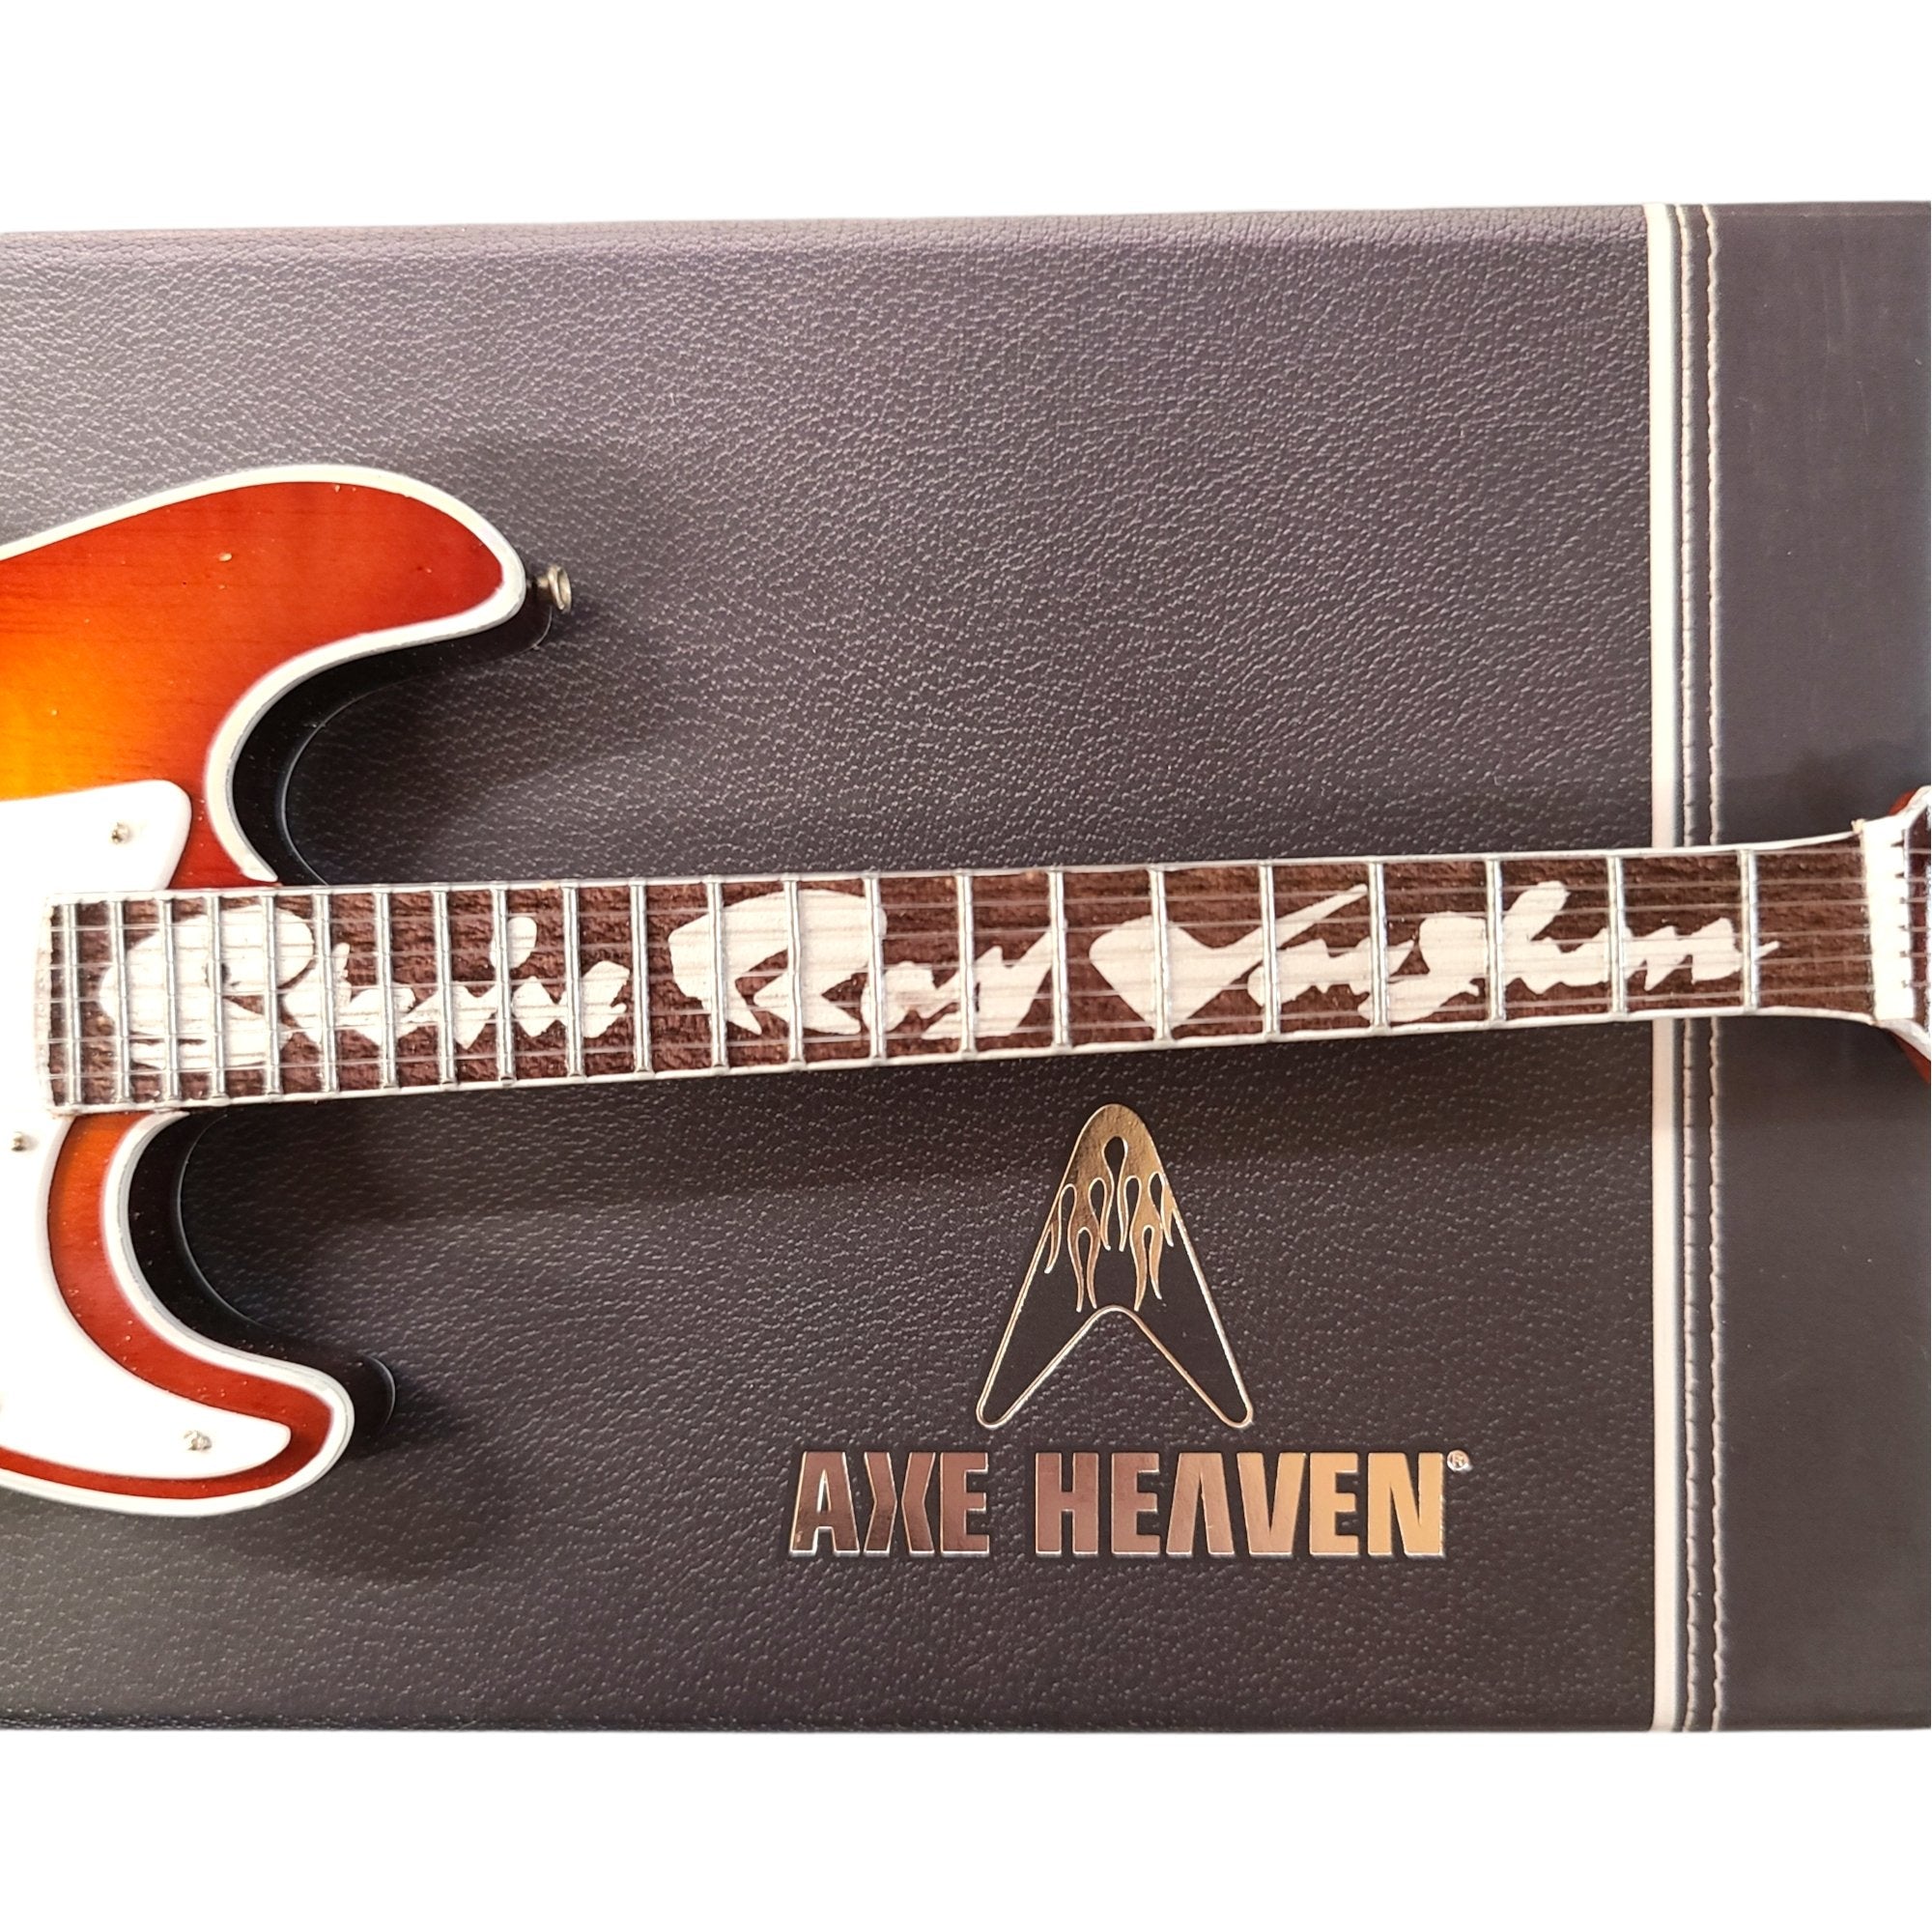 Axe Heaven SRV Hamiltone Mini Guitar Replica SRV-058